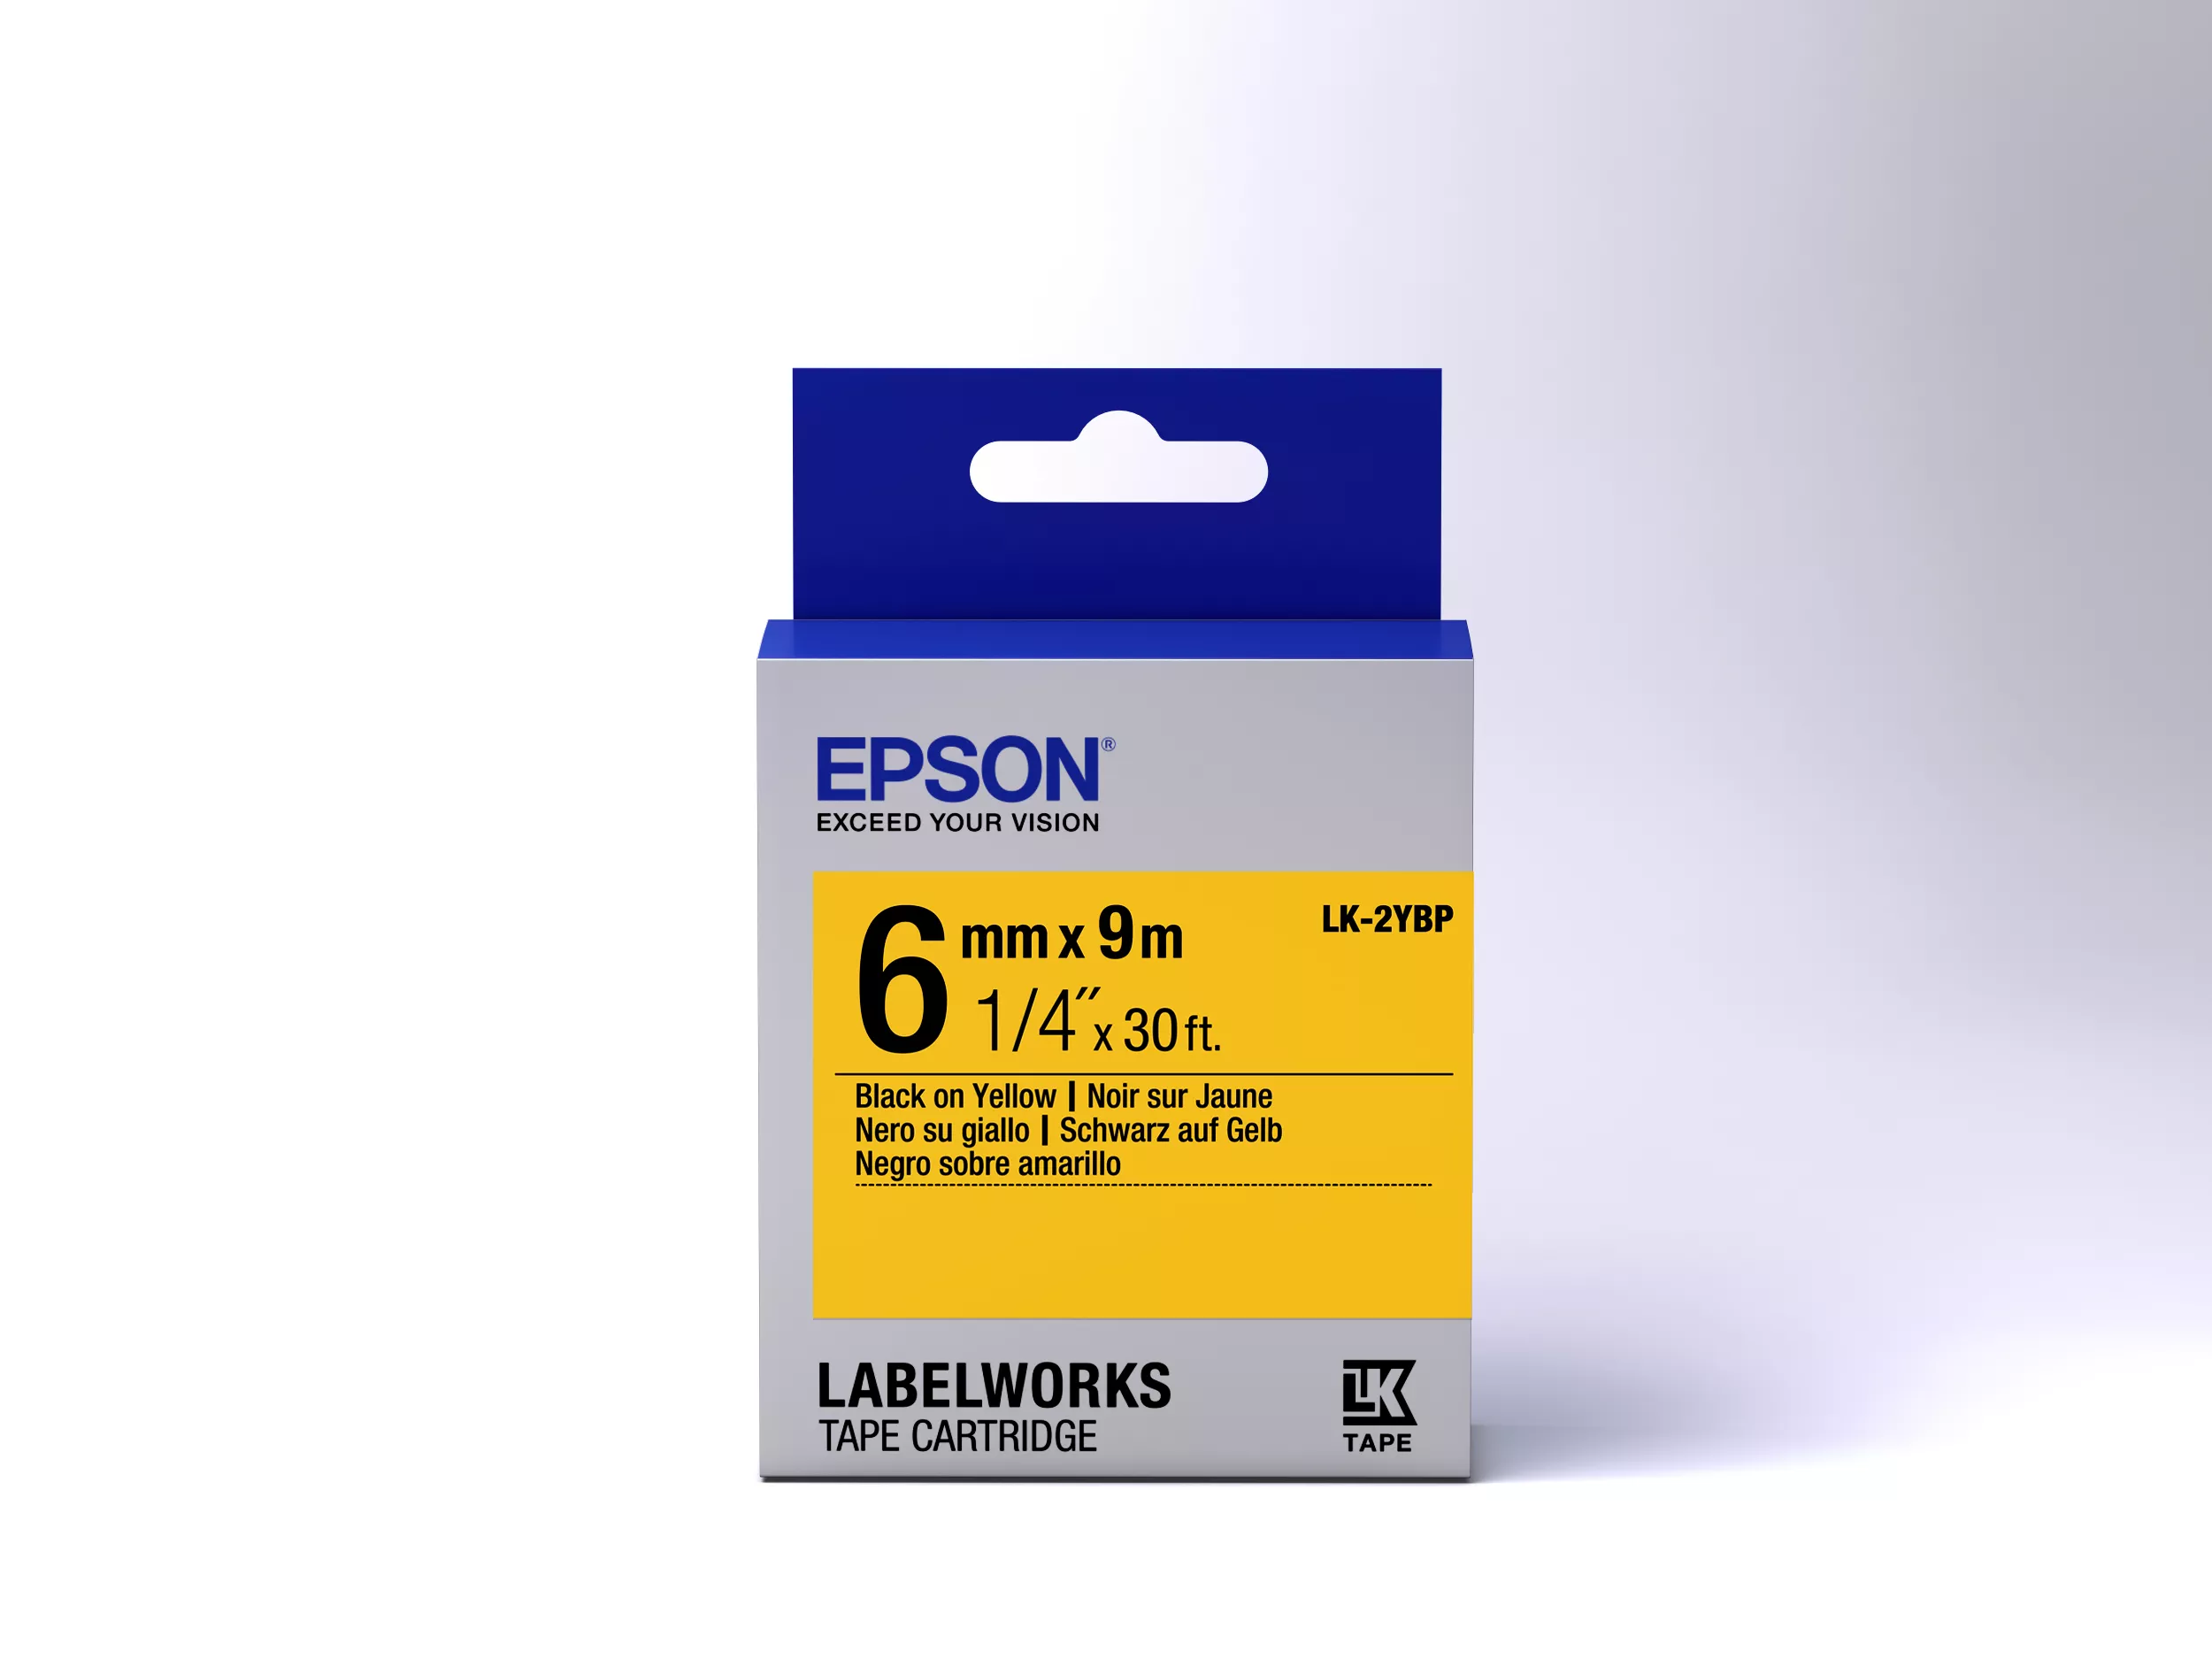 Vente Epson LK-2YBP - Couleur Pastel - Noir surJaune Epson au meilleur prix - visuel 2